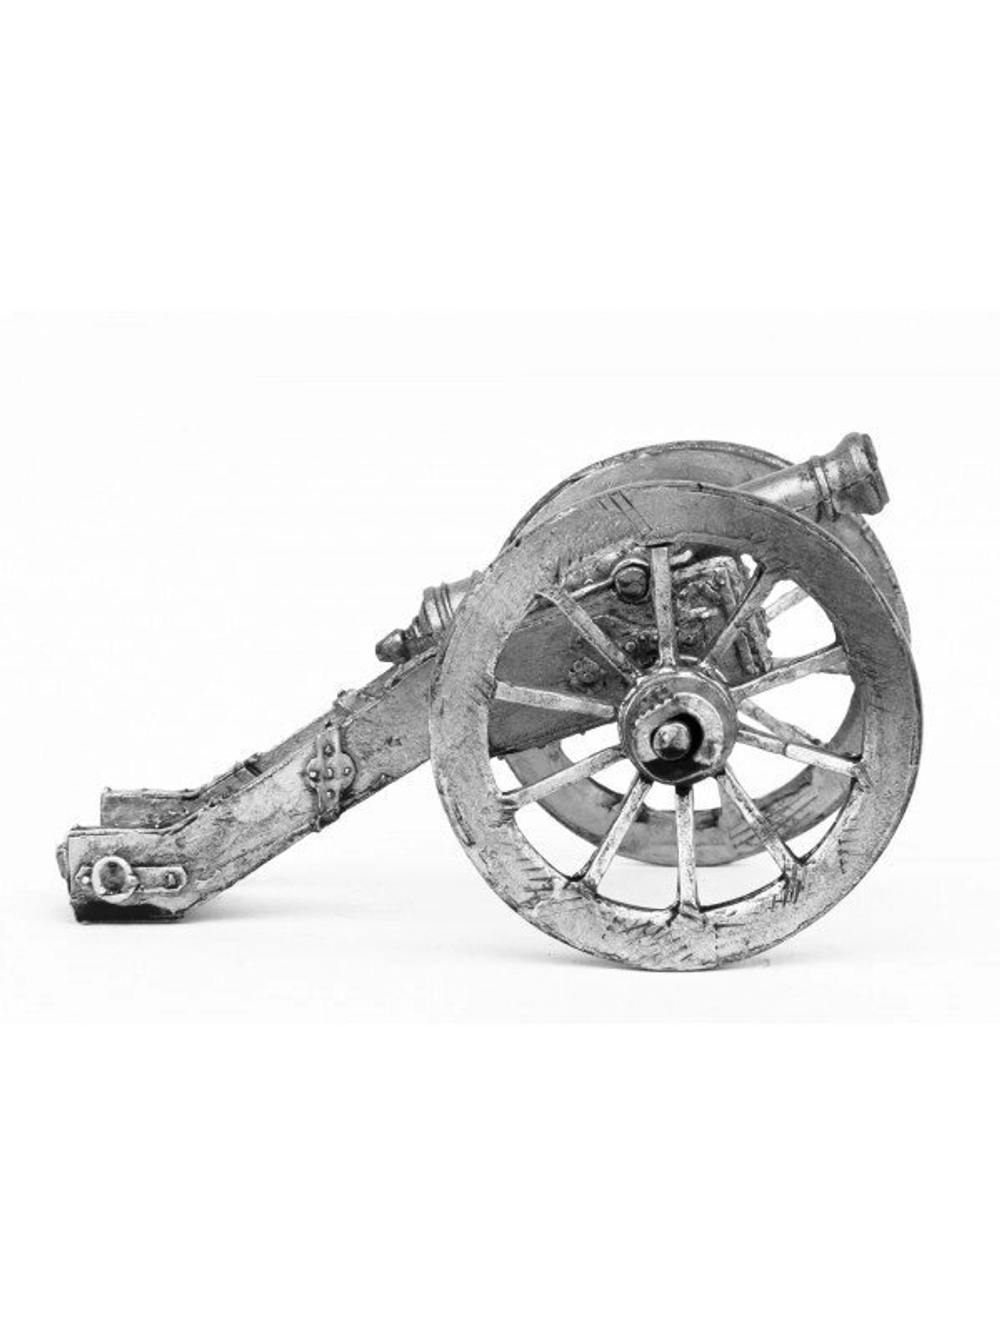 3-х фунтовое орудие на колесном ходу, 1700 г.